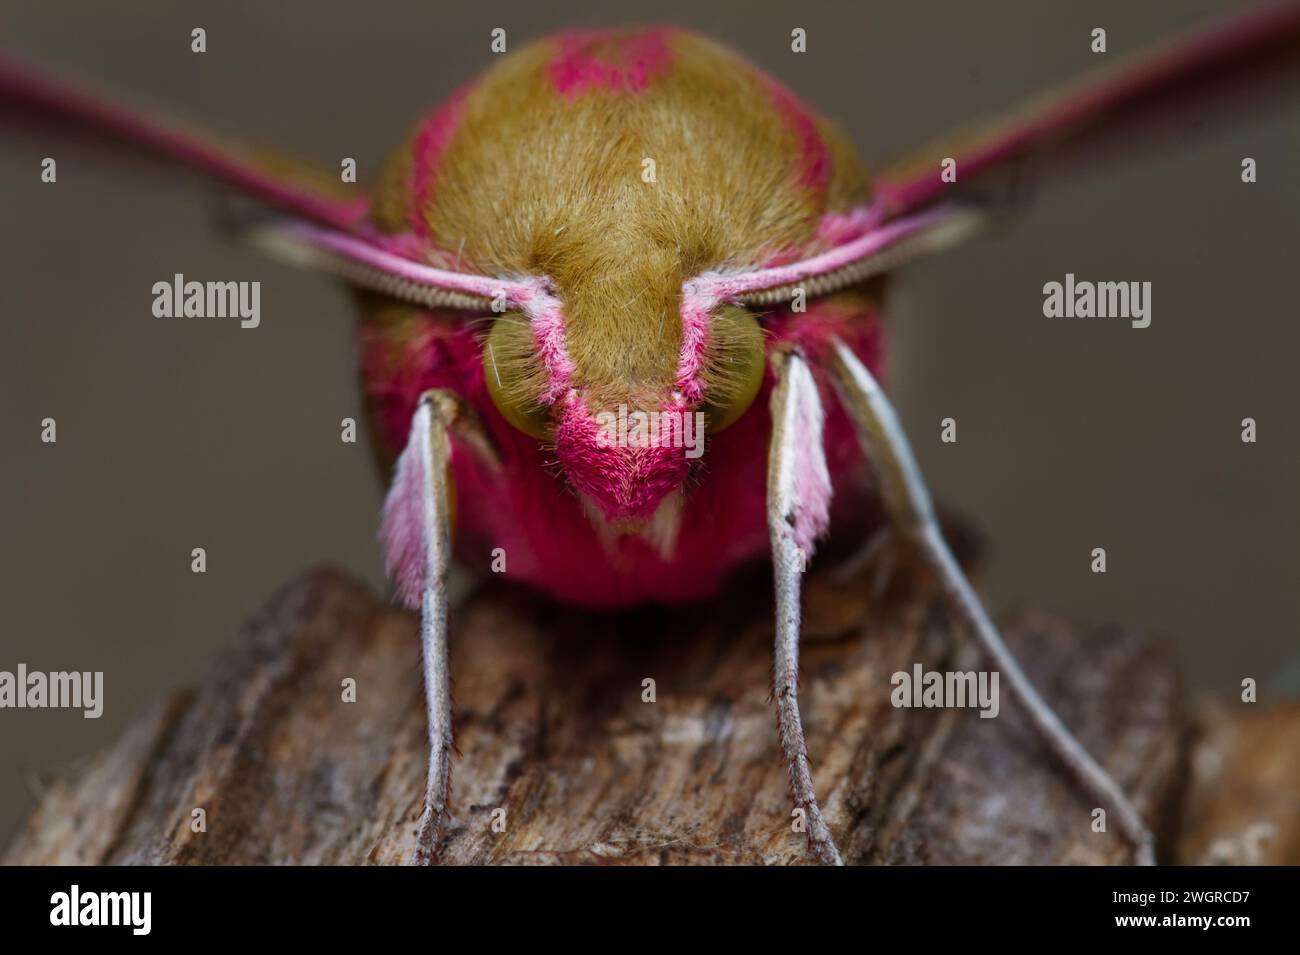 Macro, gros plan vue de face de la tête fourrée d'un Elephant Hawk Moth, Deilephila elpenor, au repos, assise sur Un morceau de bois, New Forest, Angleterre, Royaume-Uni Banque D'Images